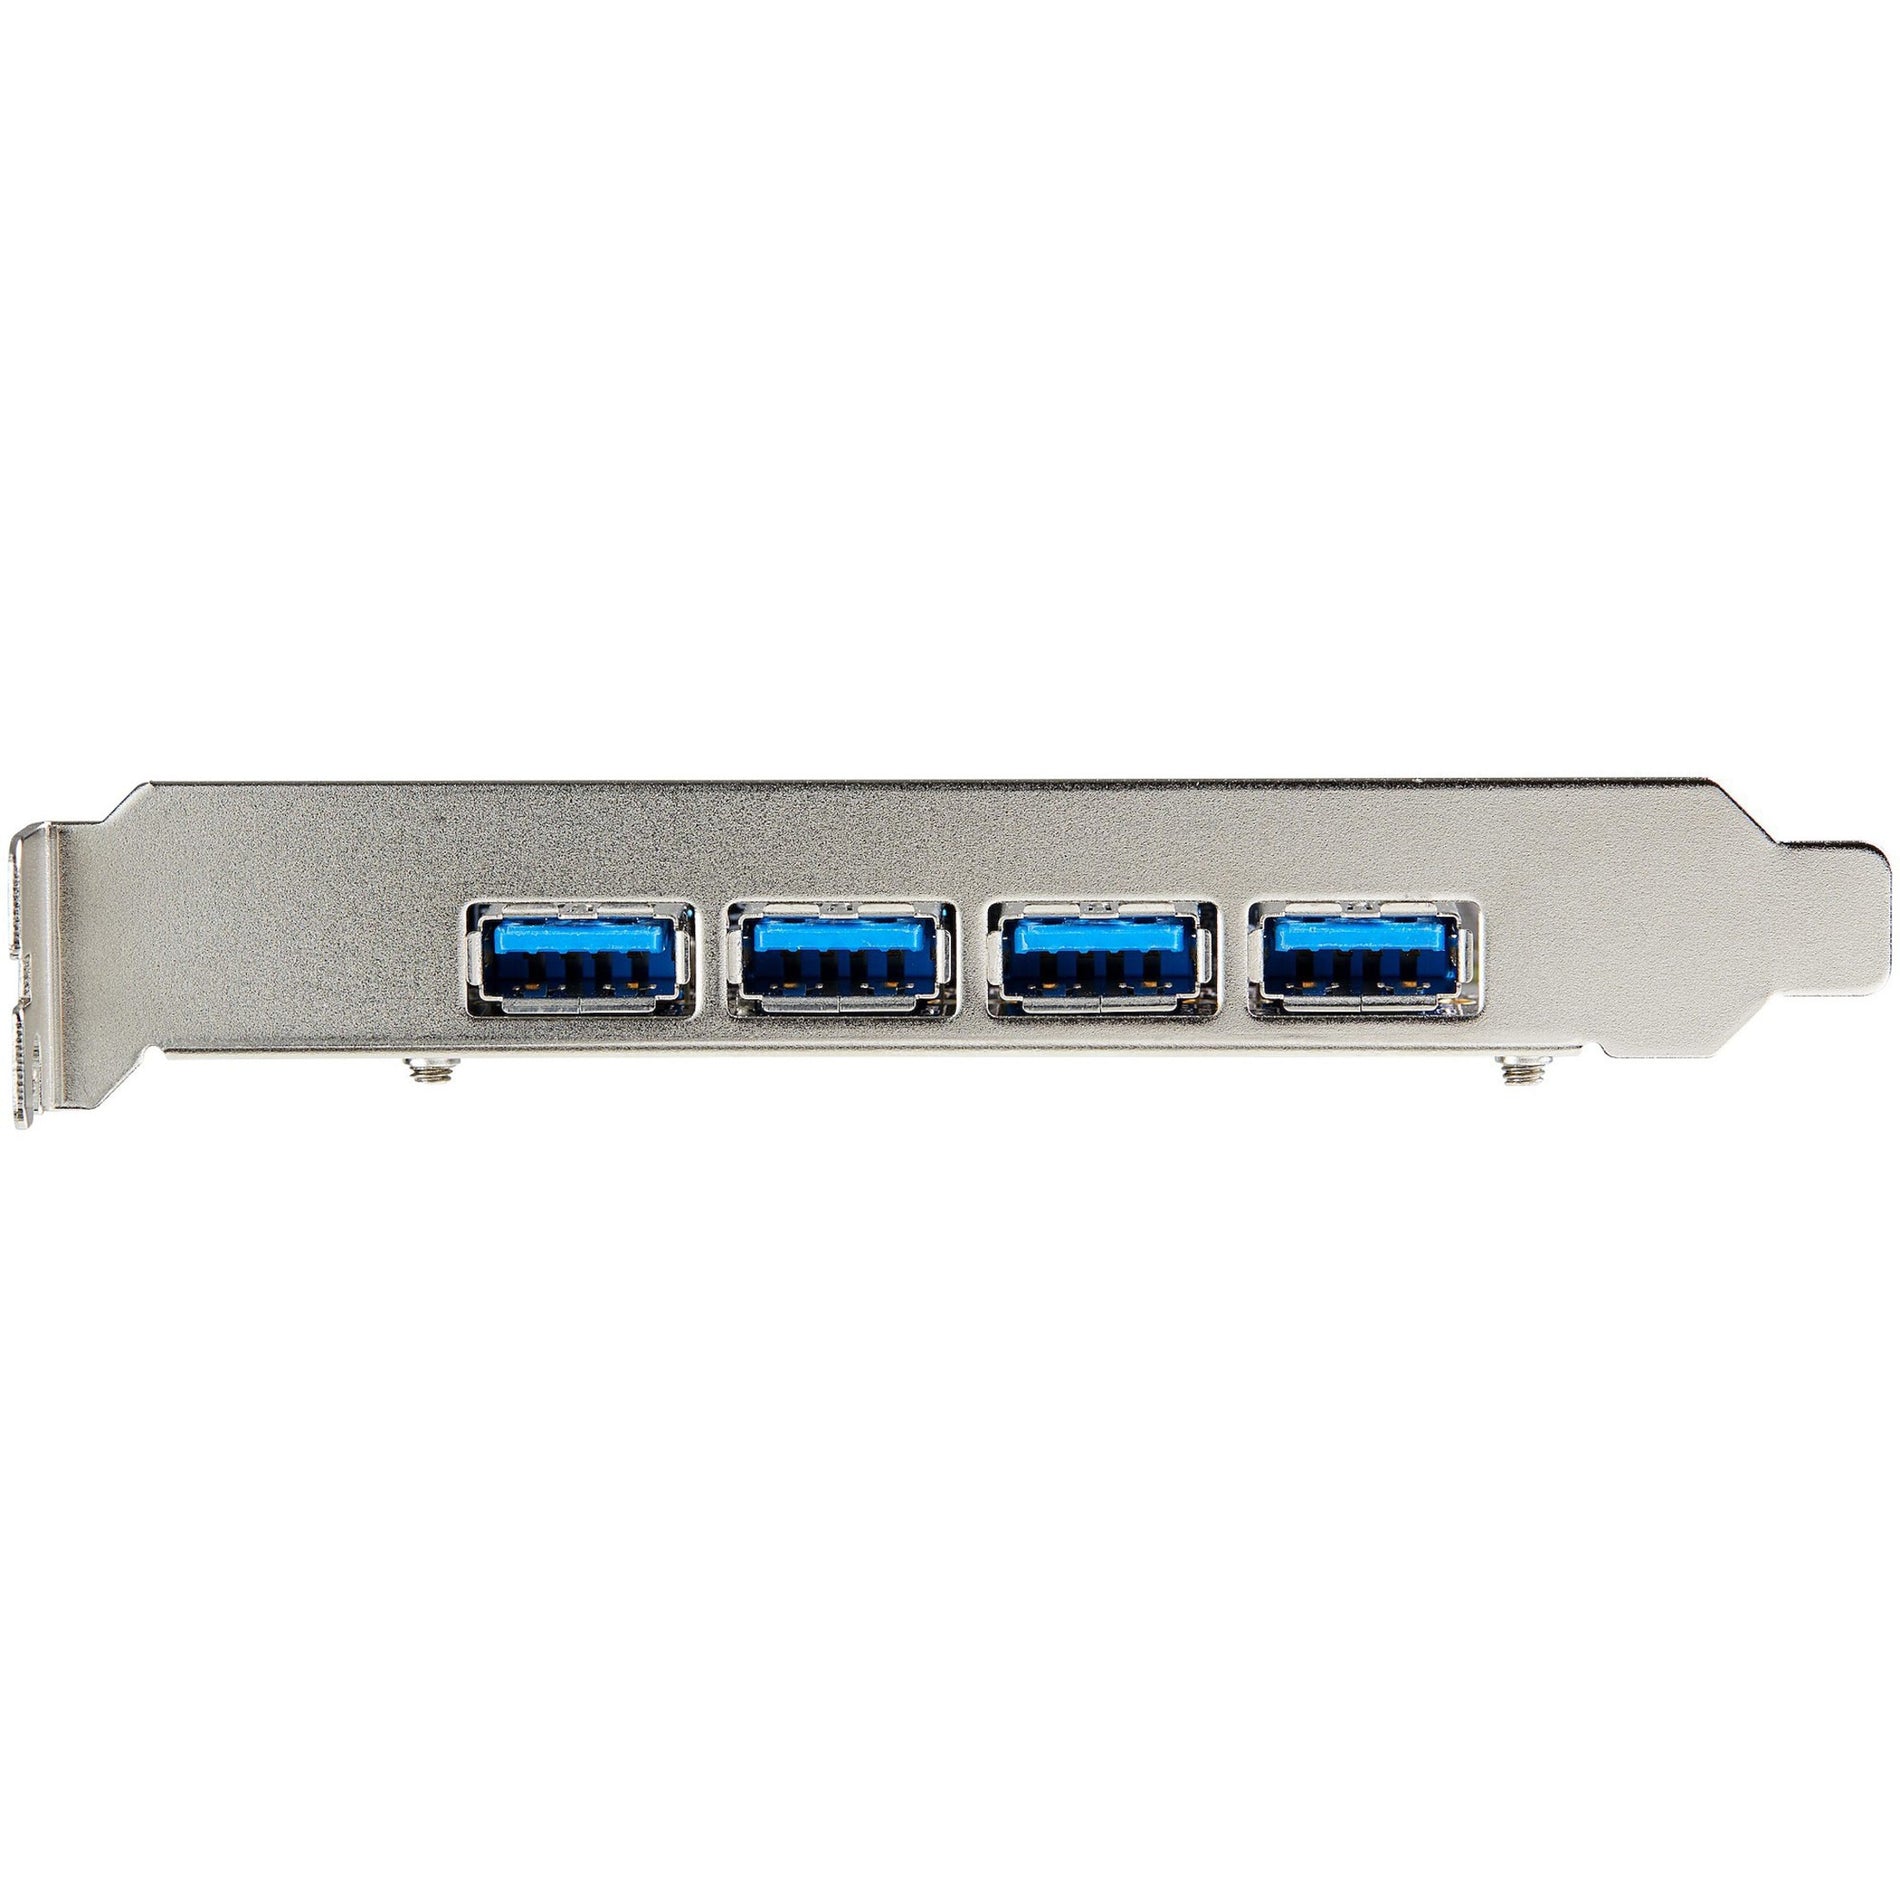 StarTech.com PEXUSB314A2V2 USB Adapter, 4 USB 3.2 Ports, SATA Port, PCI Express x4